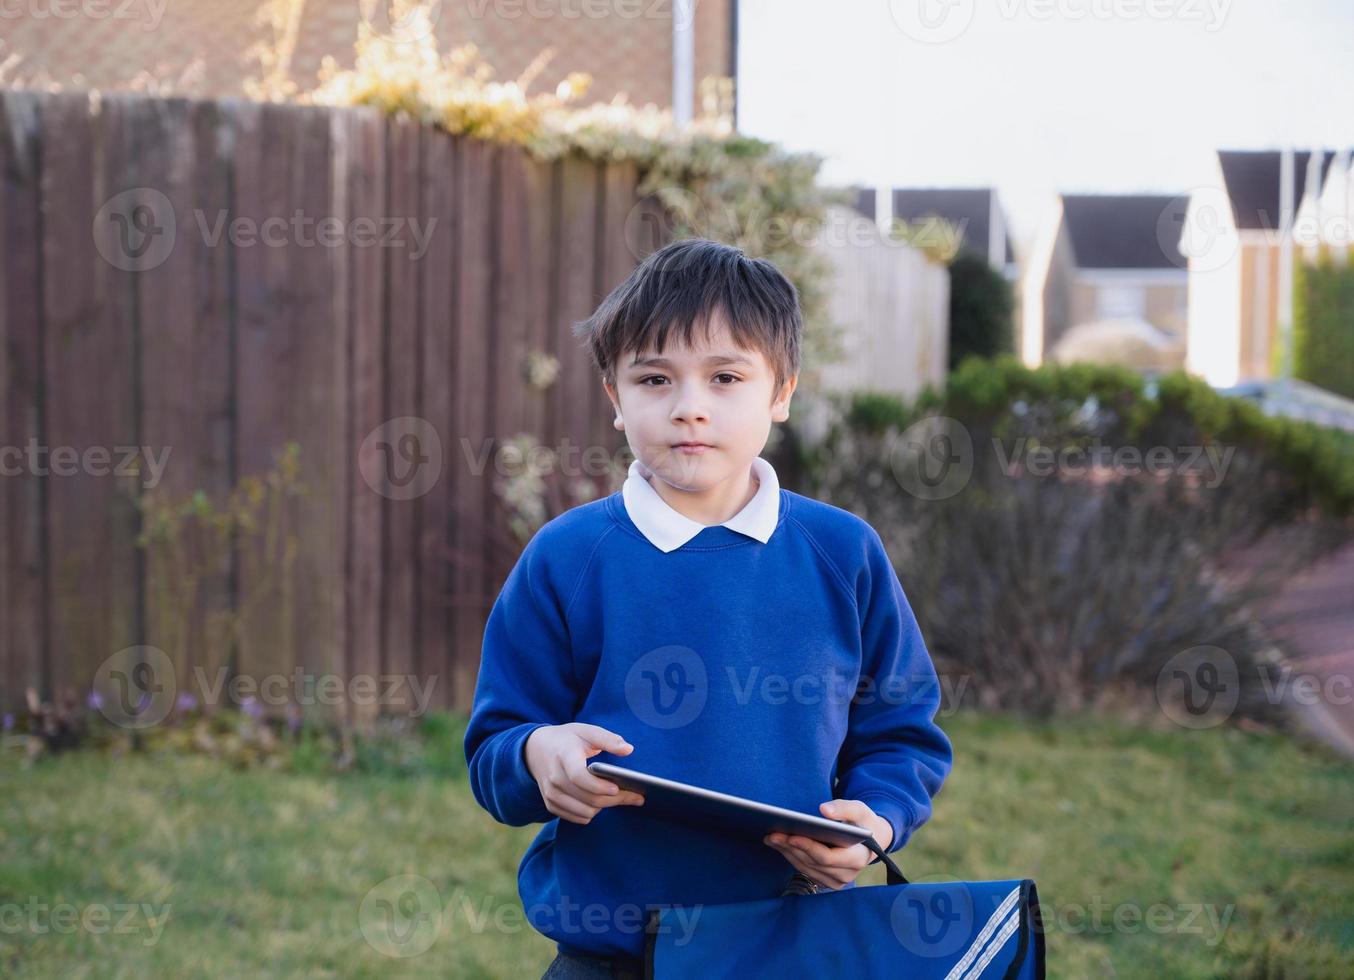 menino criança feliz segurando o tablet pc do lado de fora esperando o ônibus escolar, garoto retrato jogando jogo online ou lendo strory na internet, menino pré-escolar aprendendo com tecnologia moderna foto